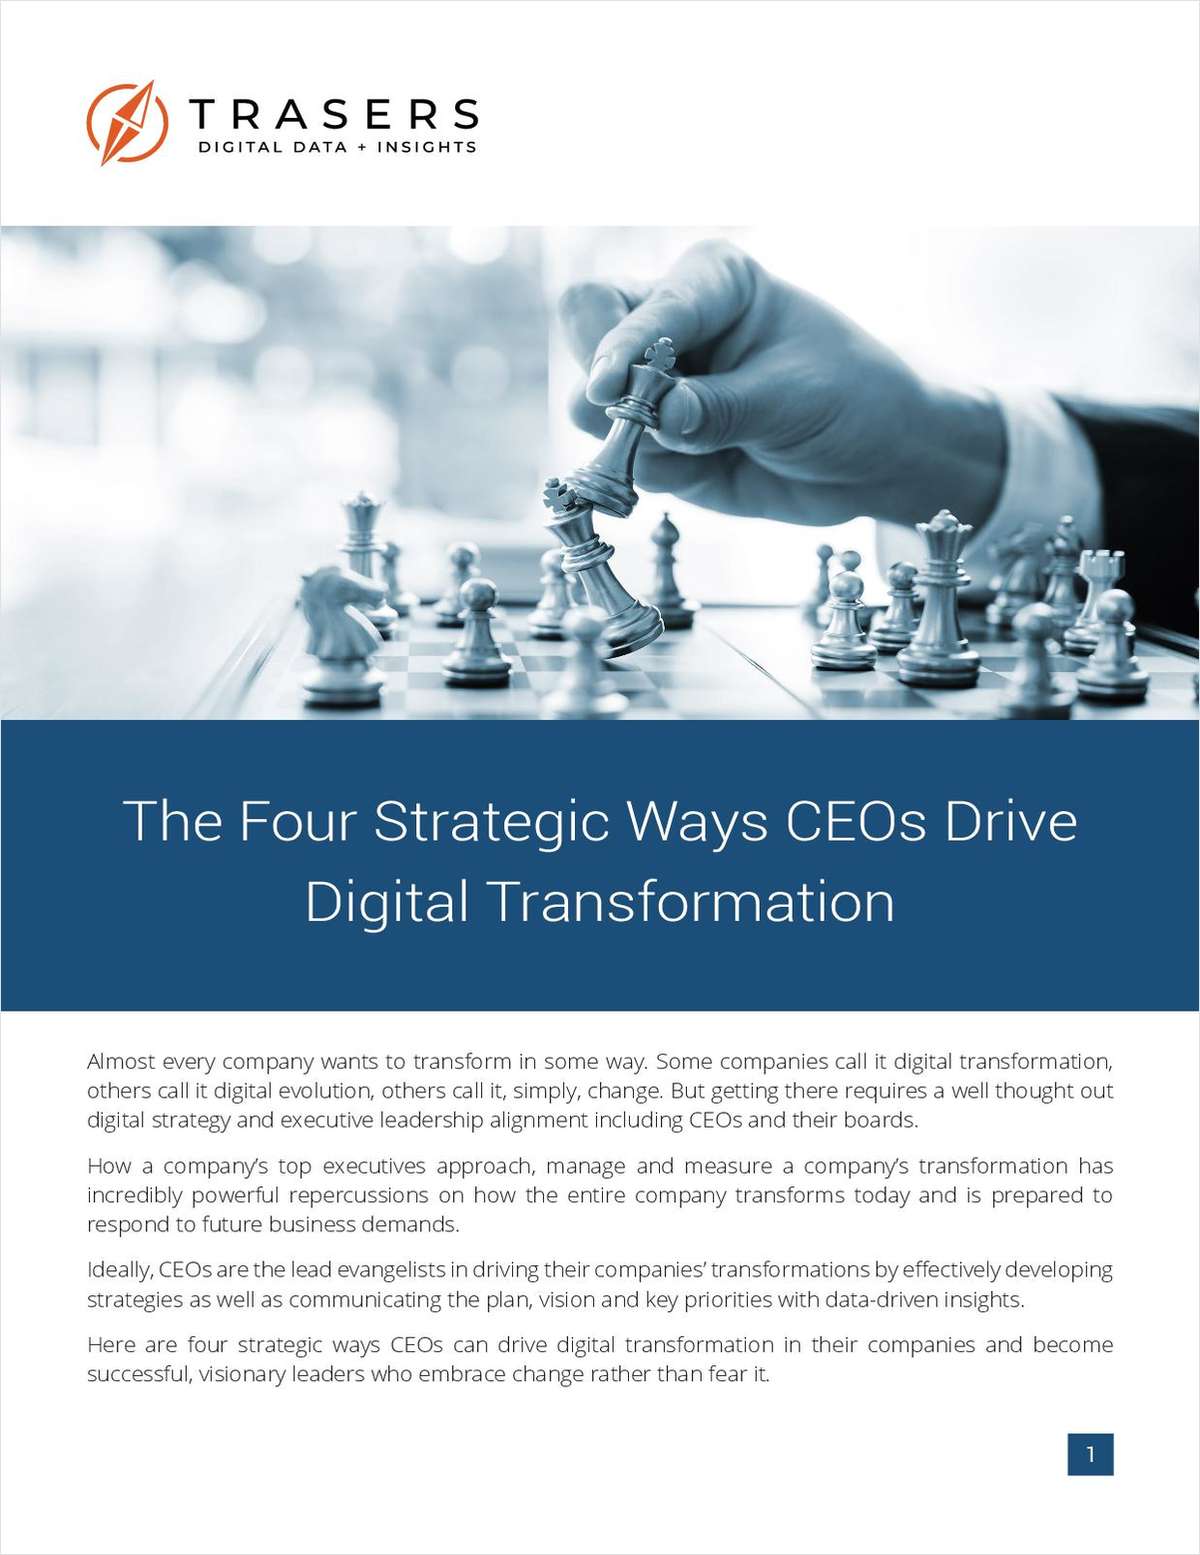 The Four Strategic Ways CEOs Drive Digital Transformation